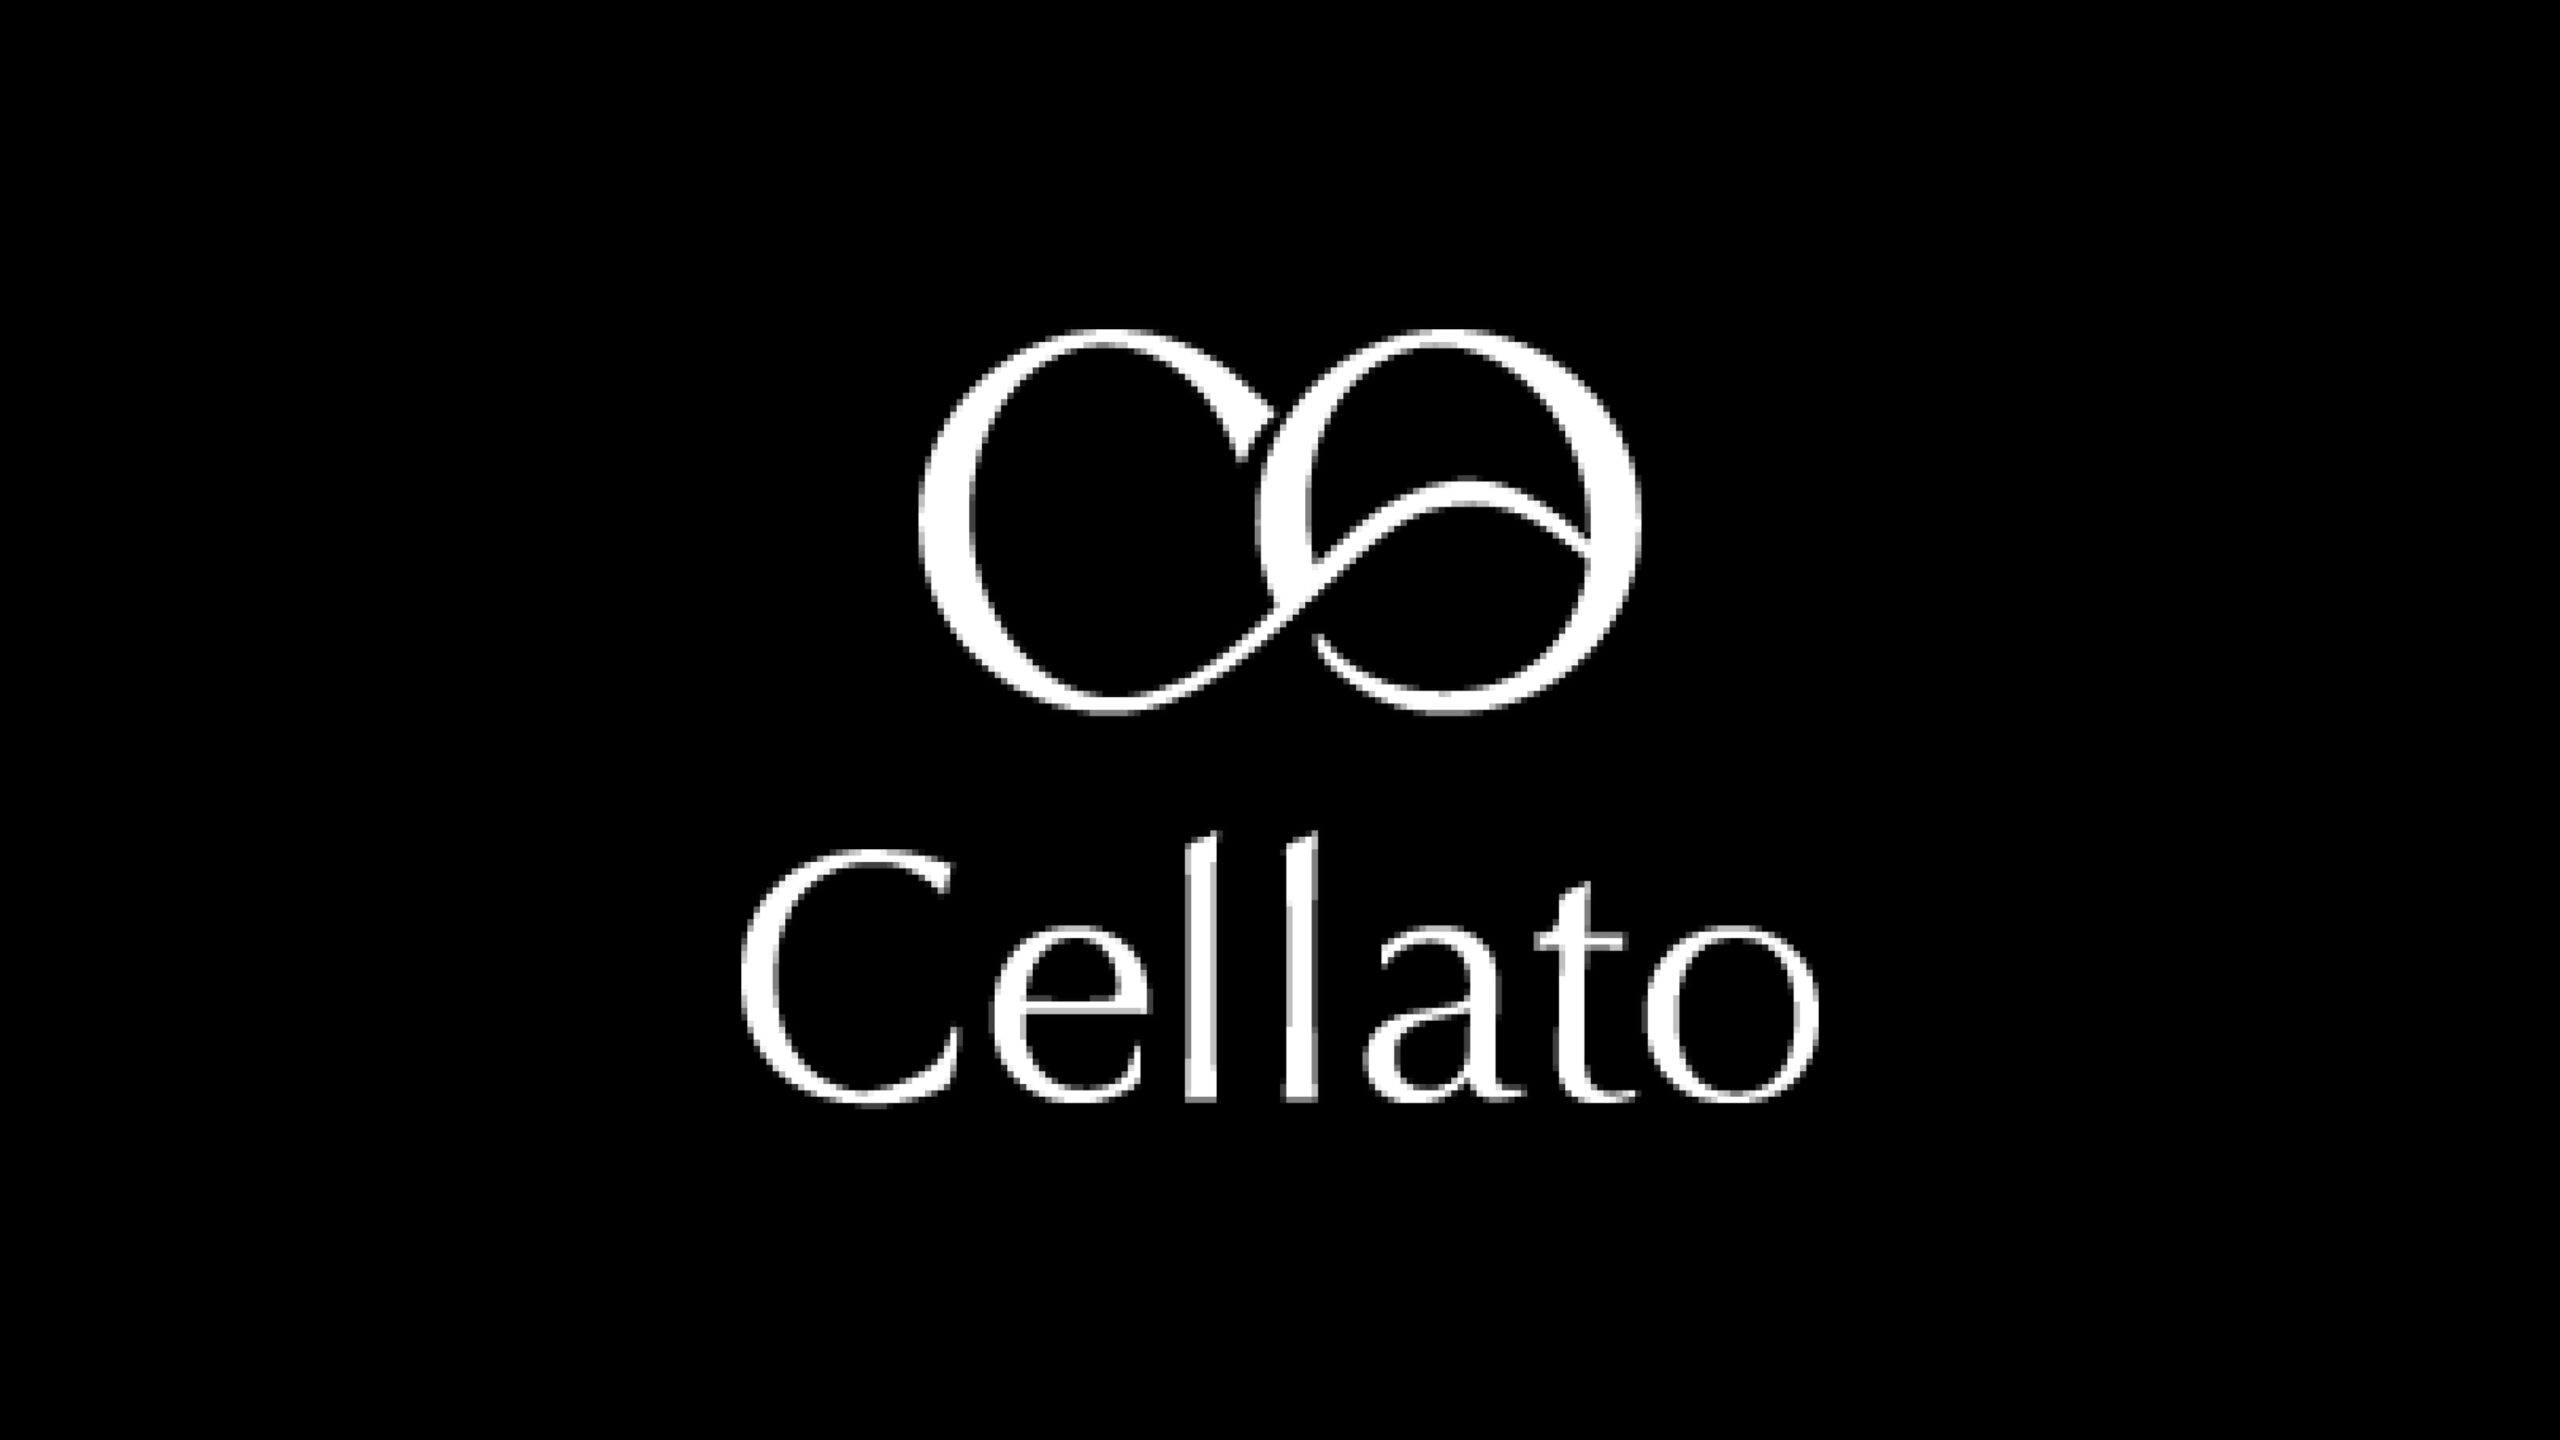 高級アイスクリームブランド『Cellato』に、株式会社デザイナー代表の泉澤恵一朗氏が事業投資